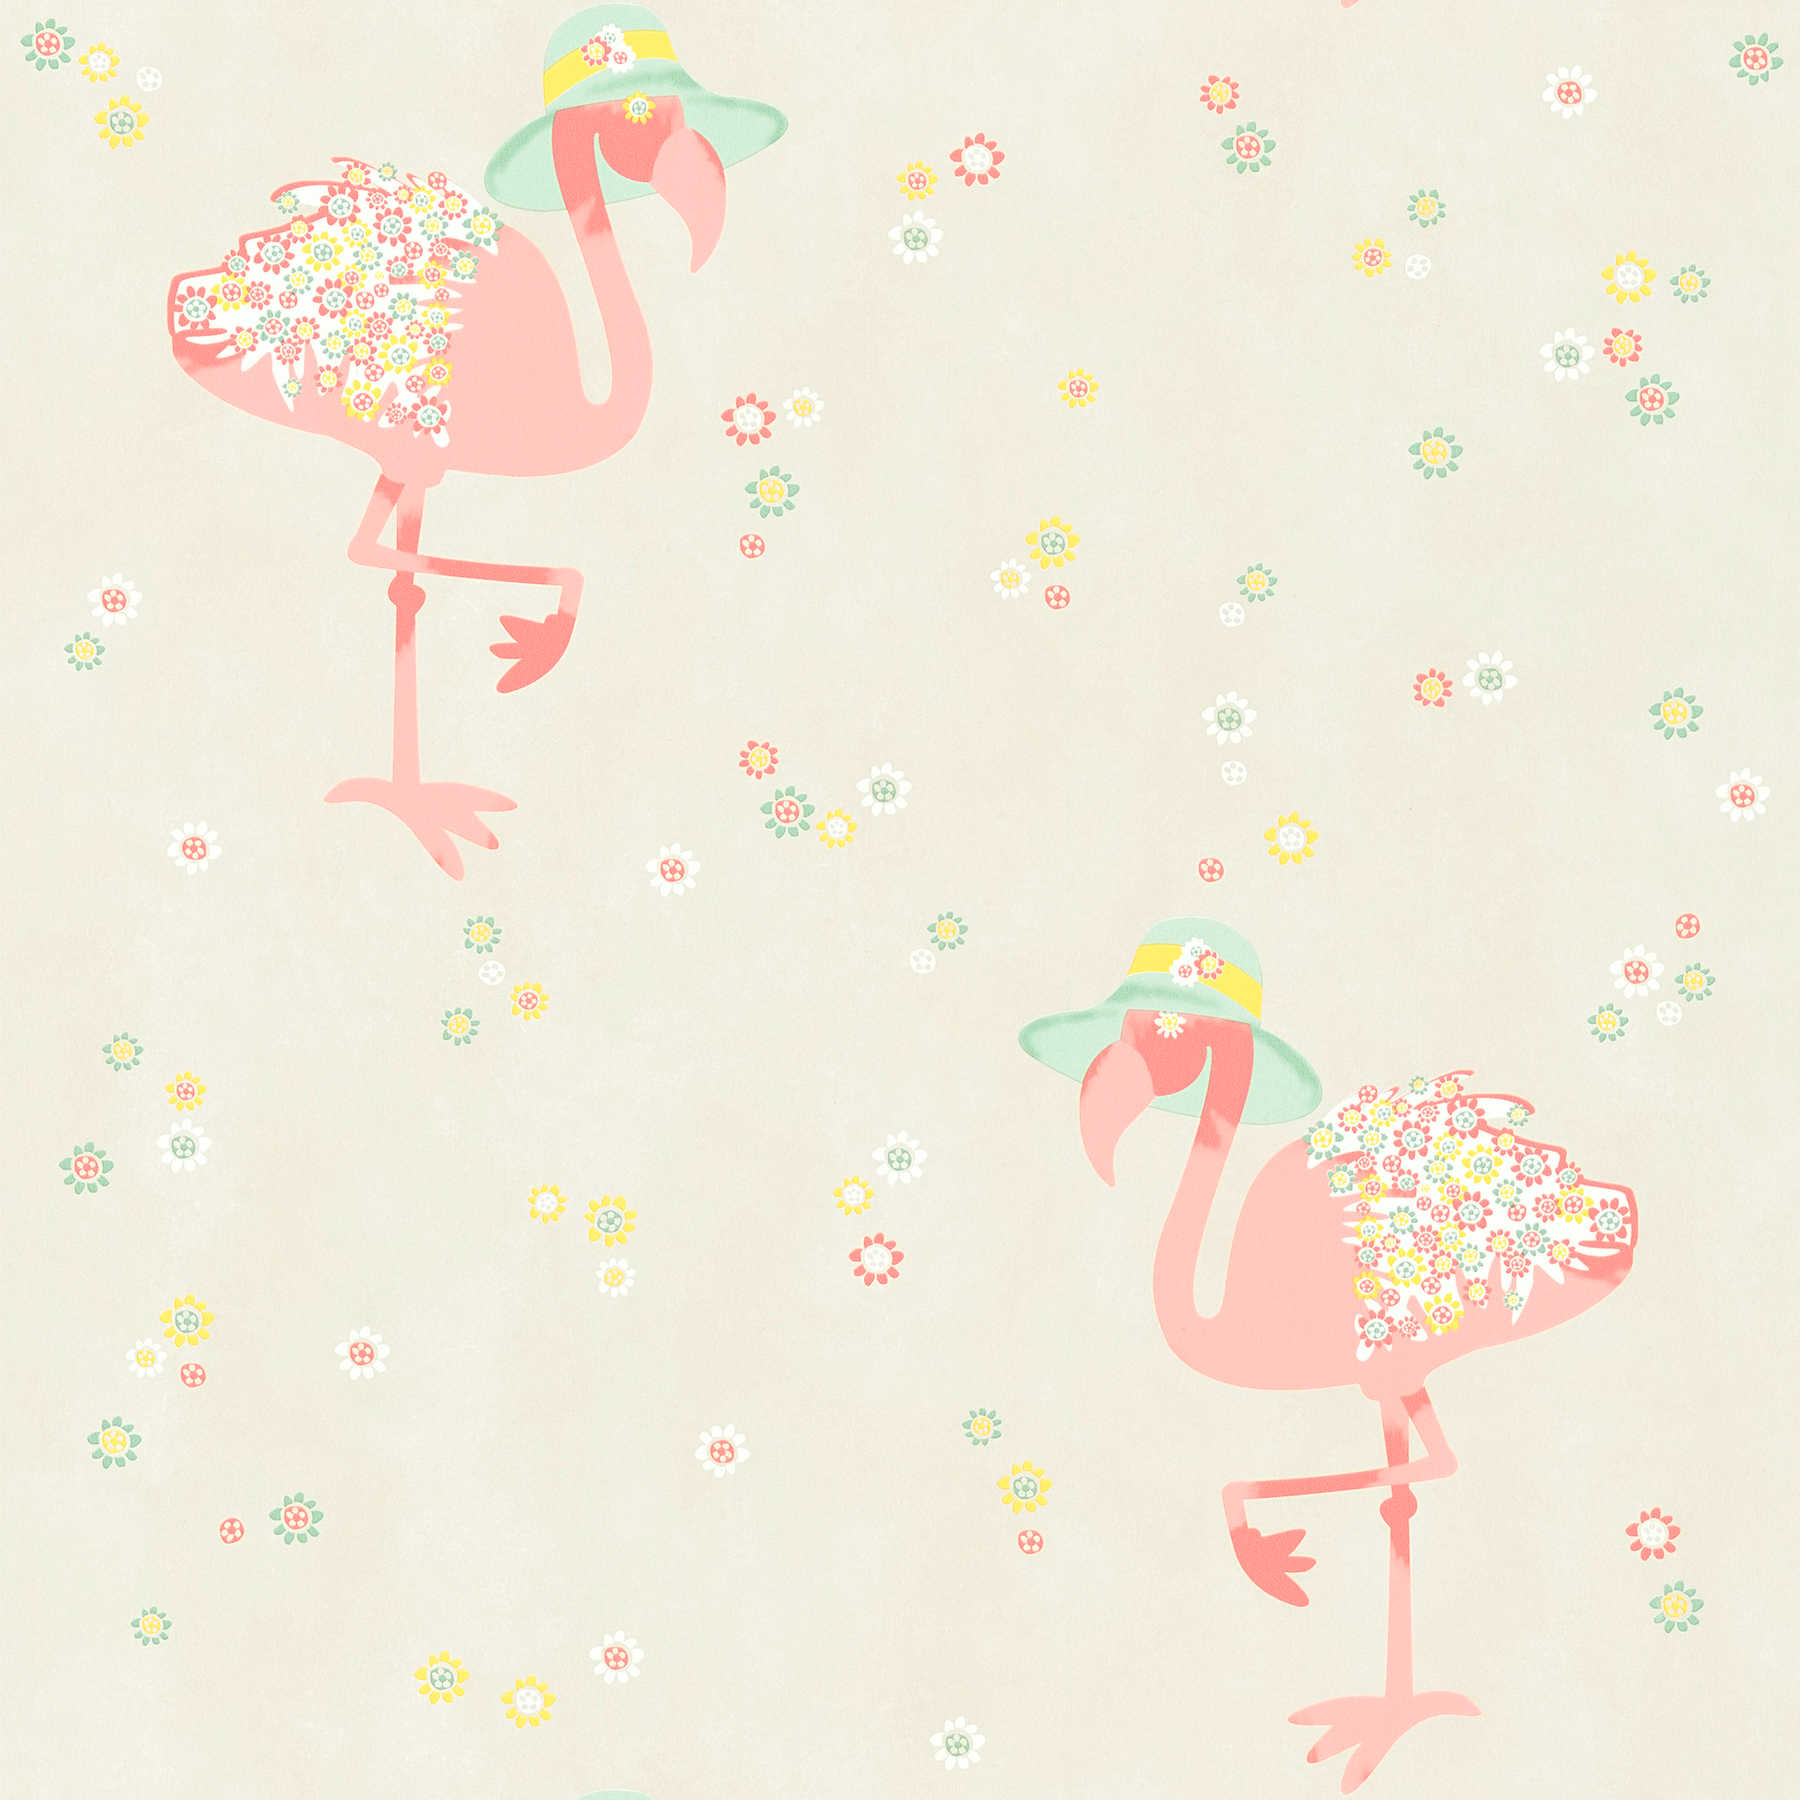         Vliesbehang flamingo & bloemen patroon - beige, roze
    